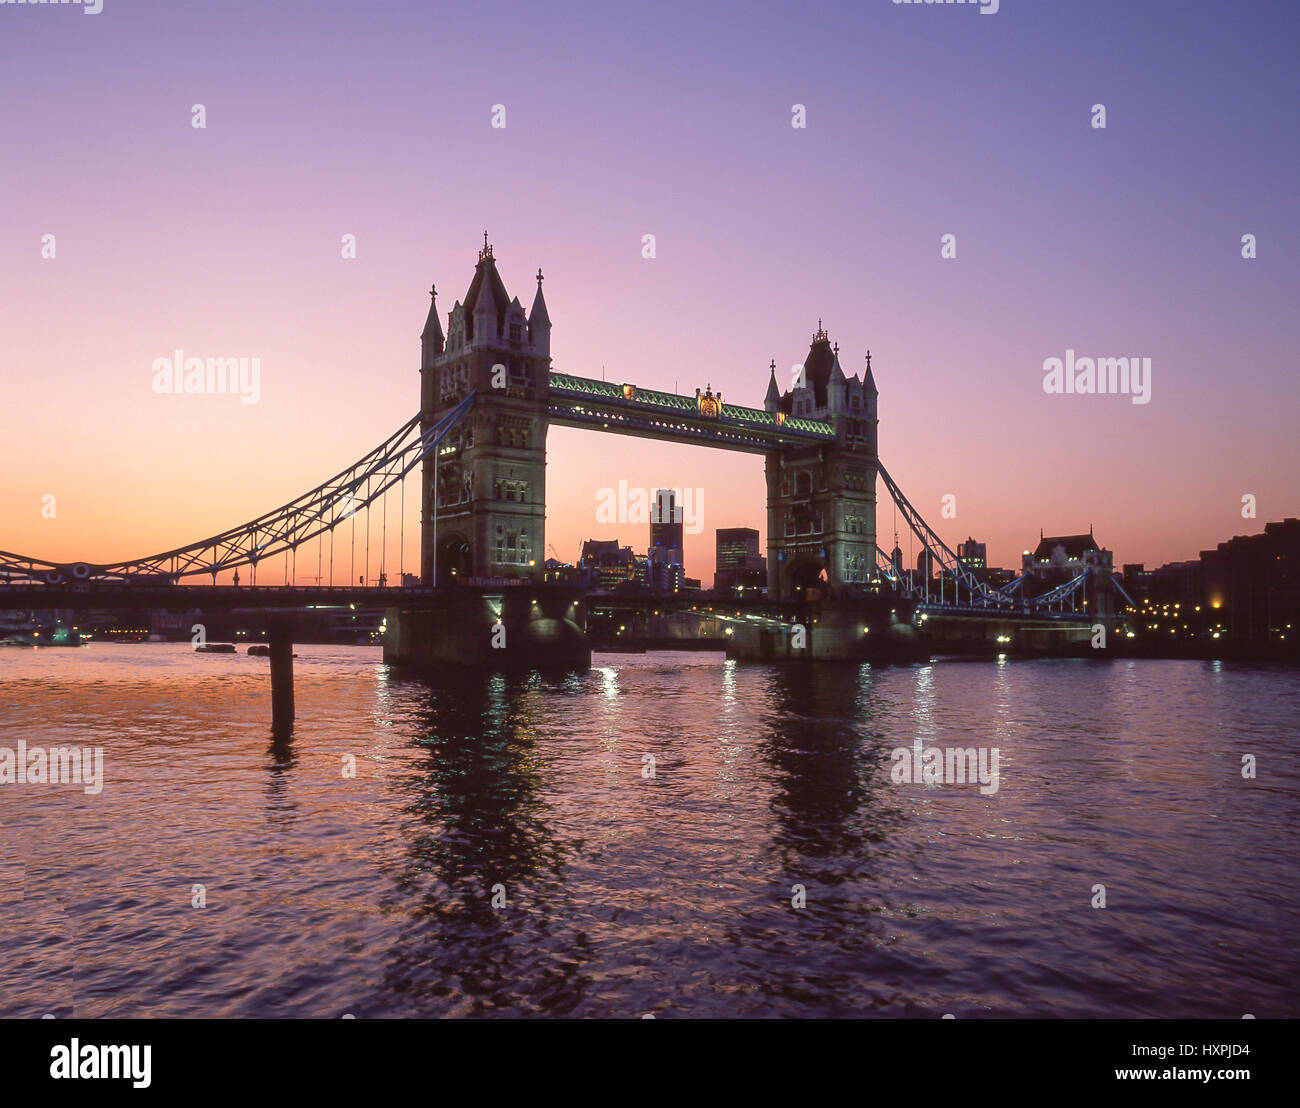 Le Tower Bridge et la Tamise au crépuscule, London Borough of Southwark, Londres, Angleterre, Royaume-Uni Banque D'Images